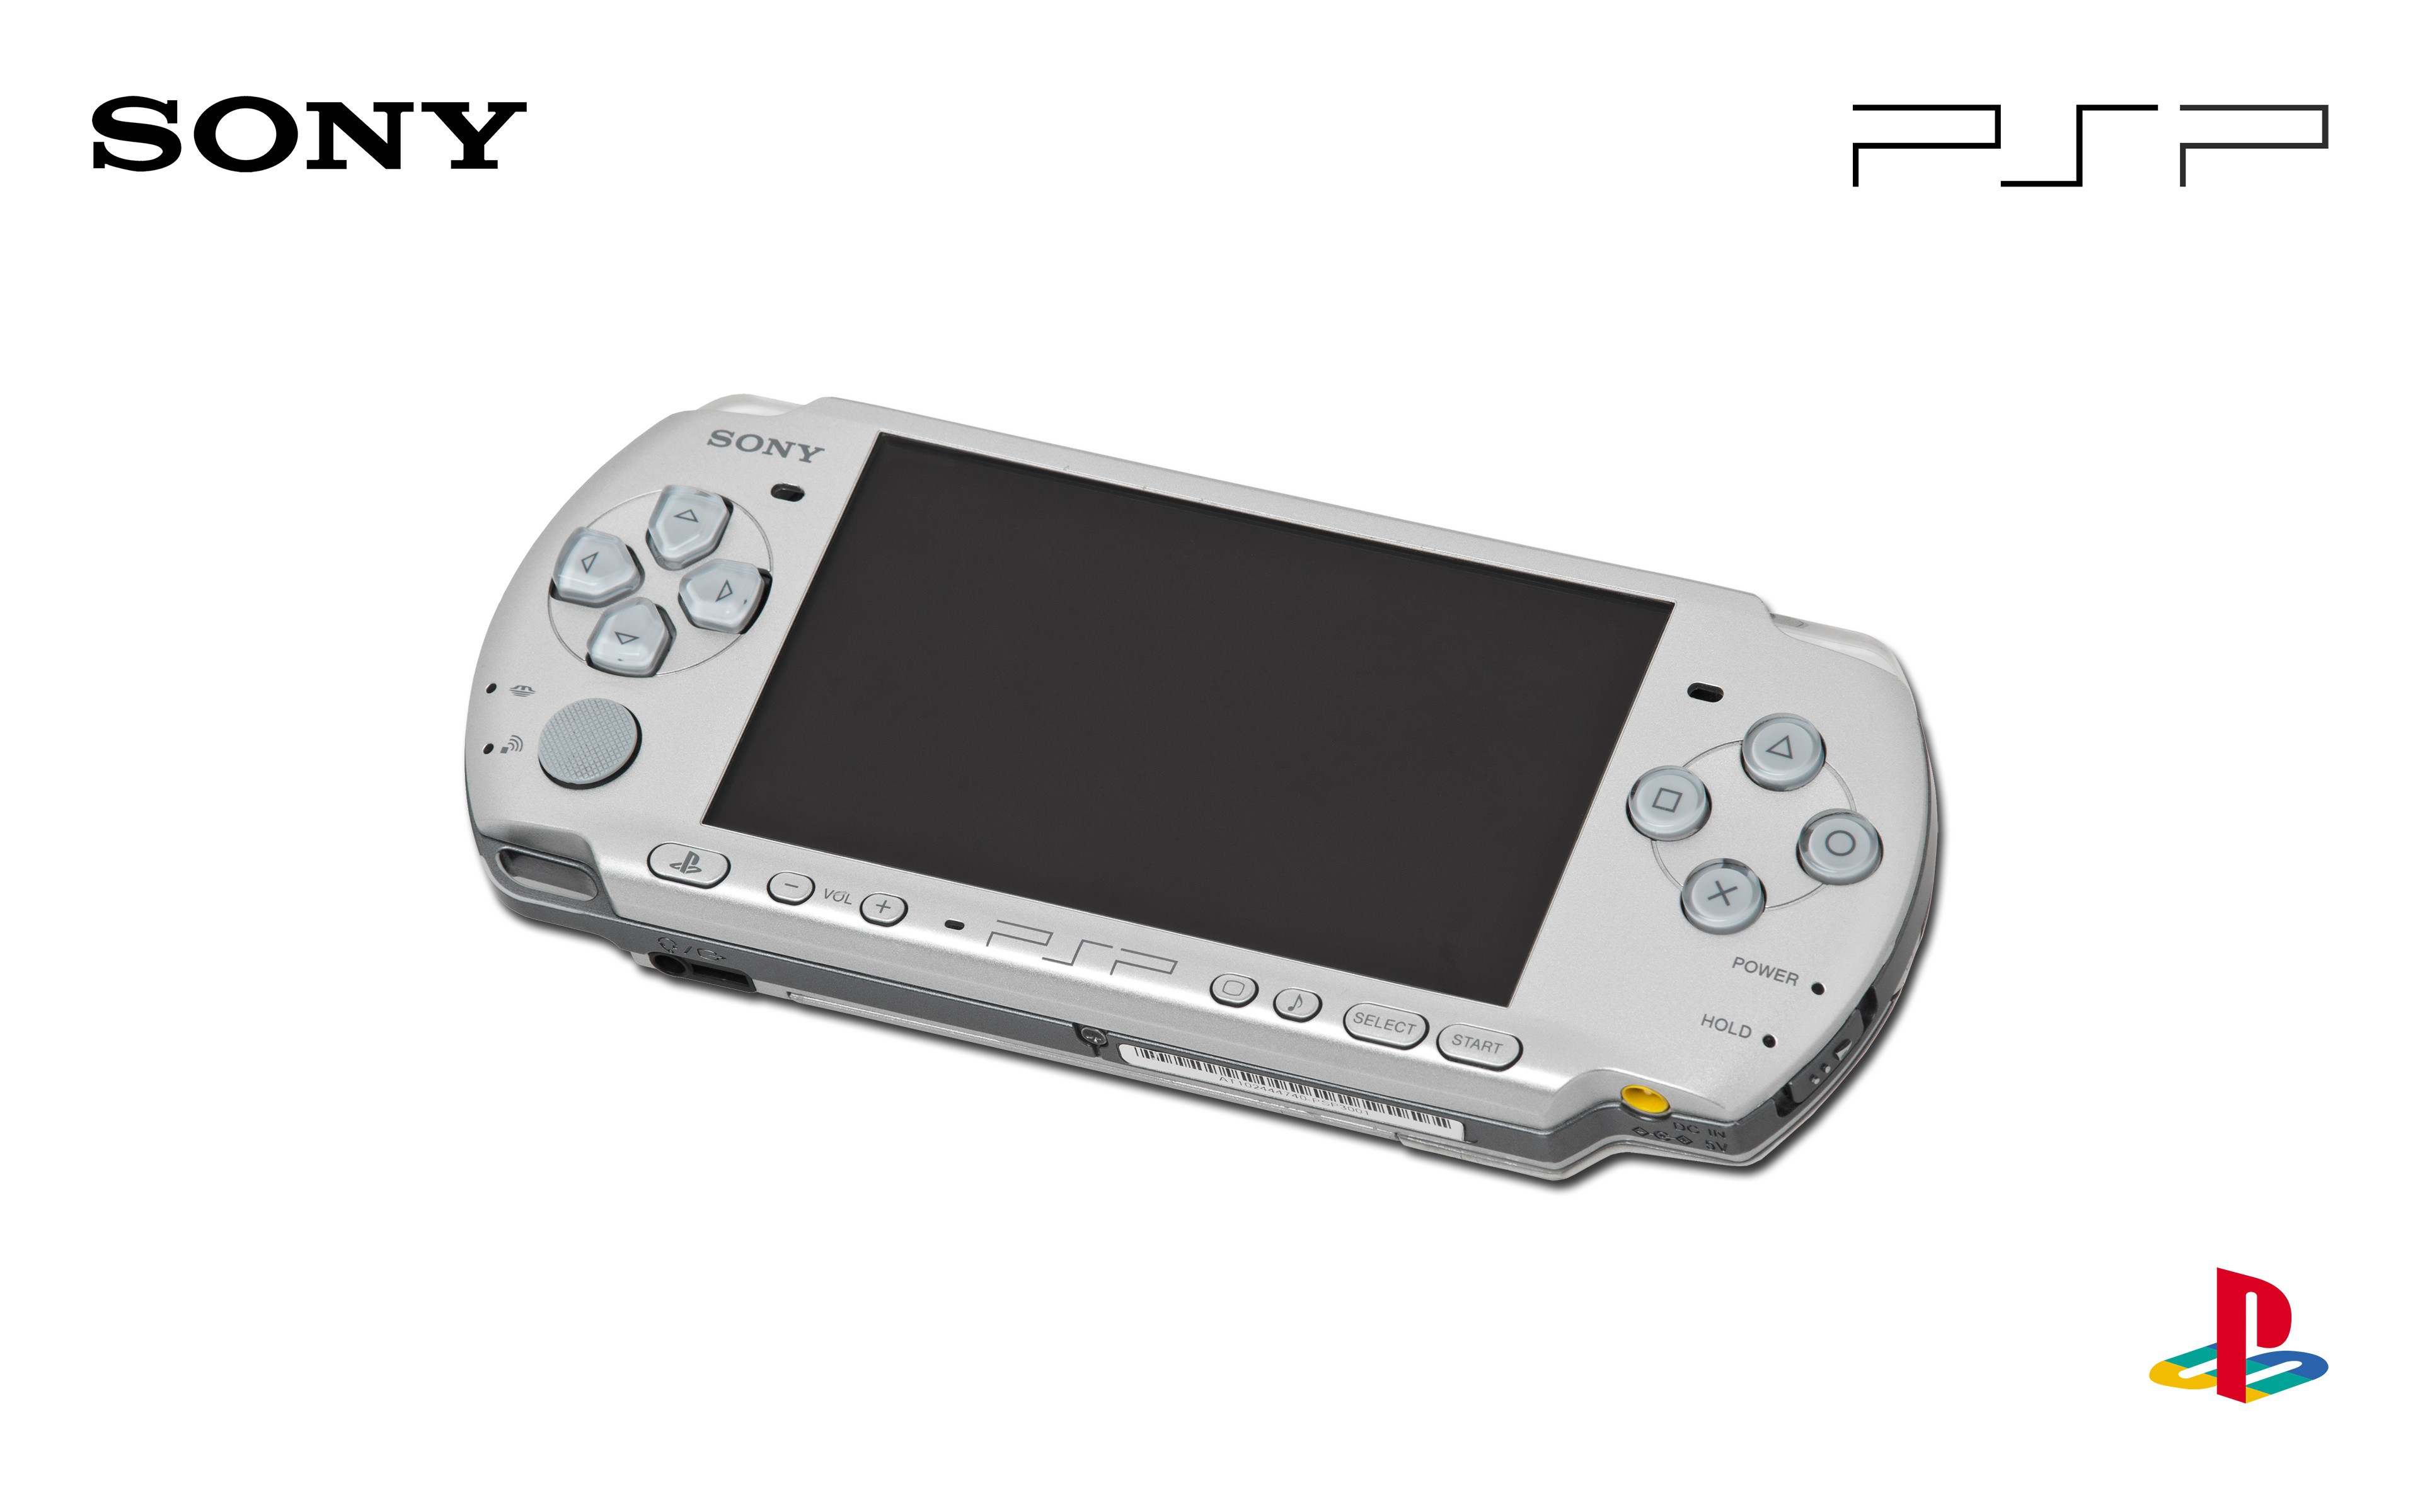 Сони псп игры. Sony PSP 4000. Портативная игровая консоль PSP 4000. Портативная консоль PSP bia. ПСП сони 1.